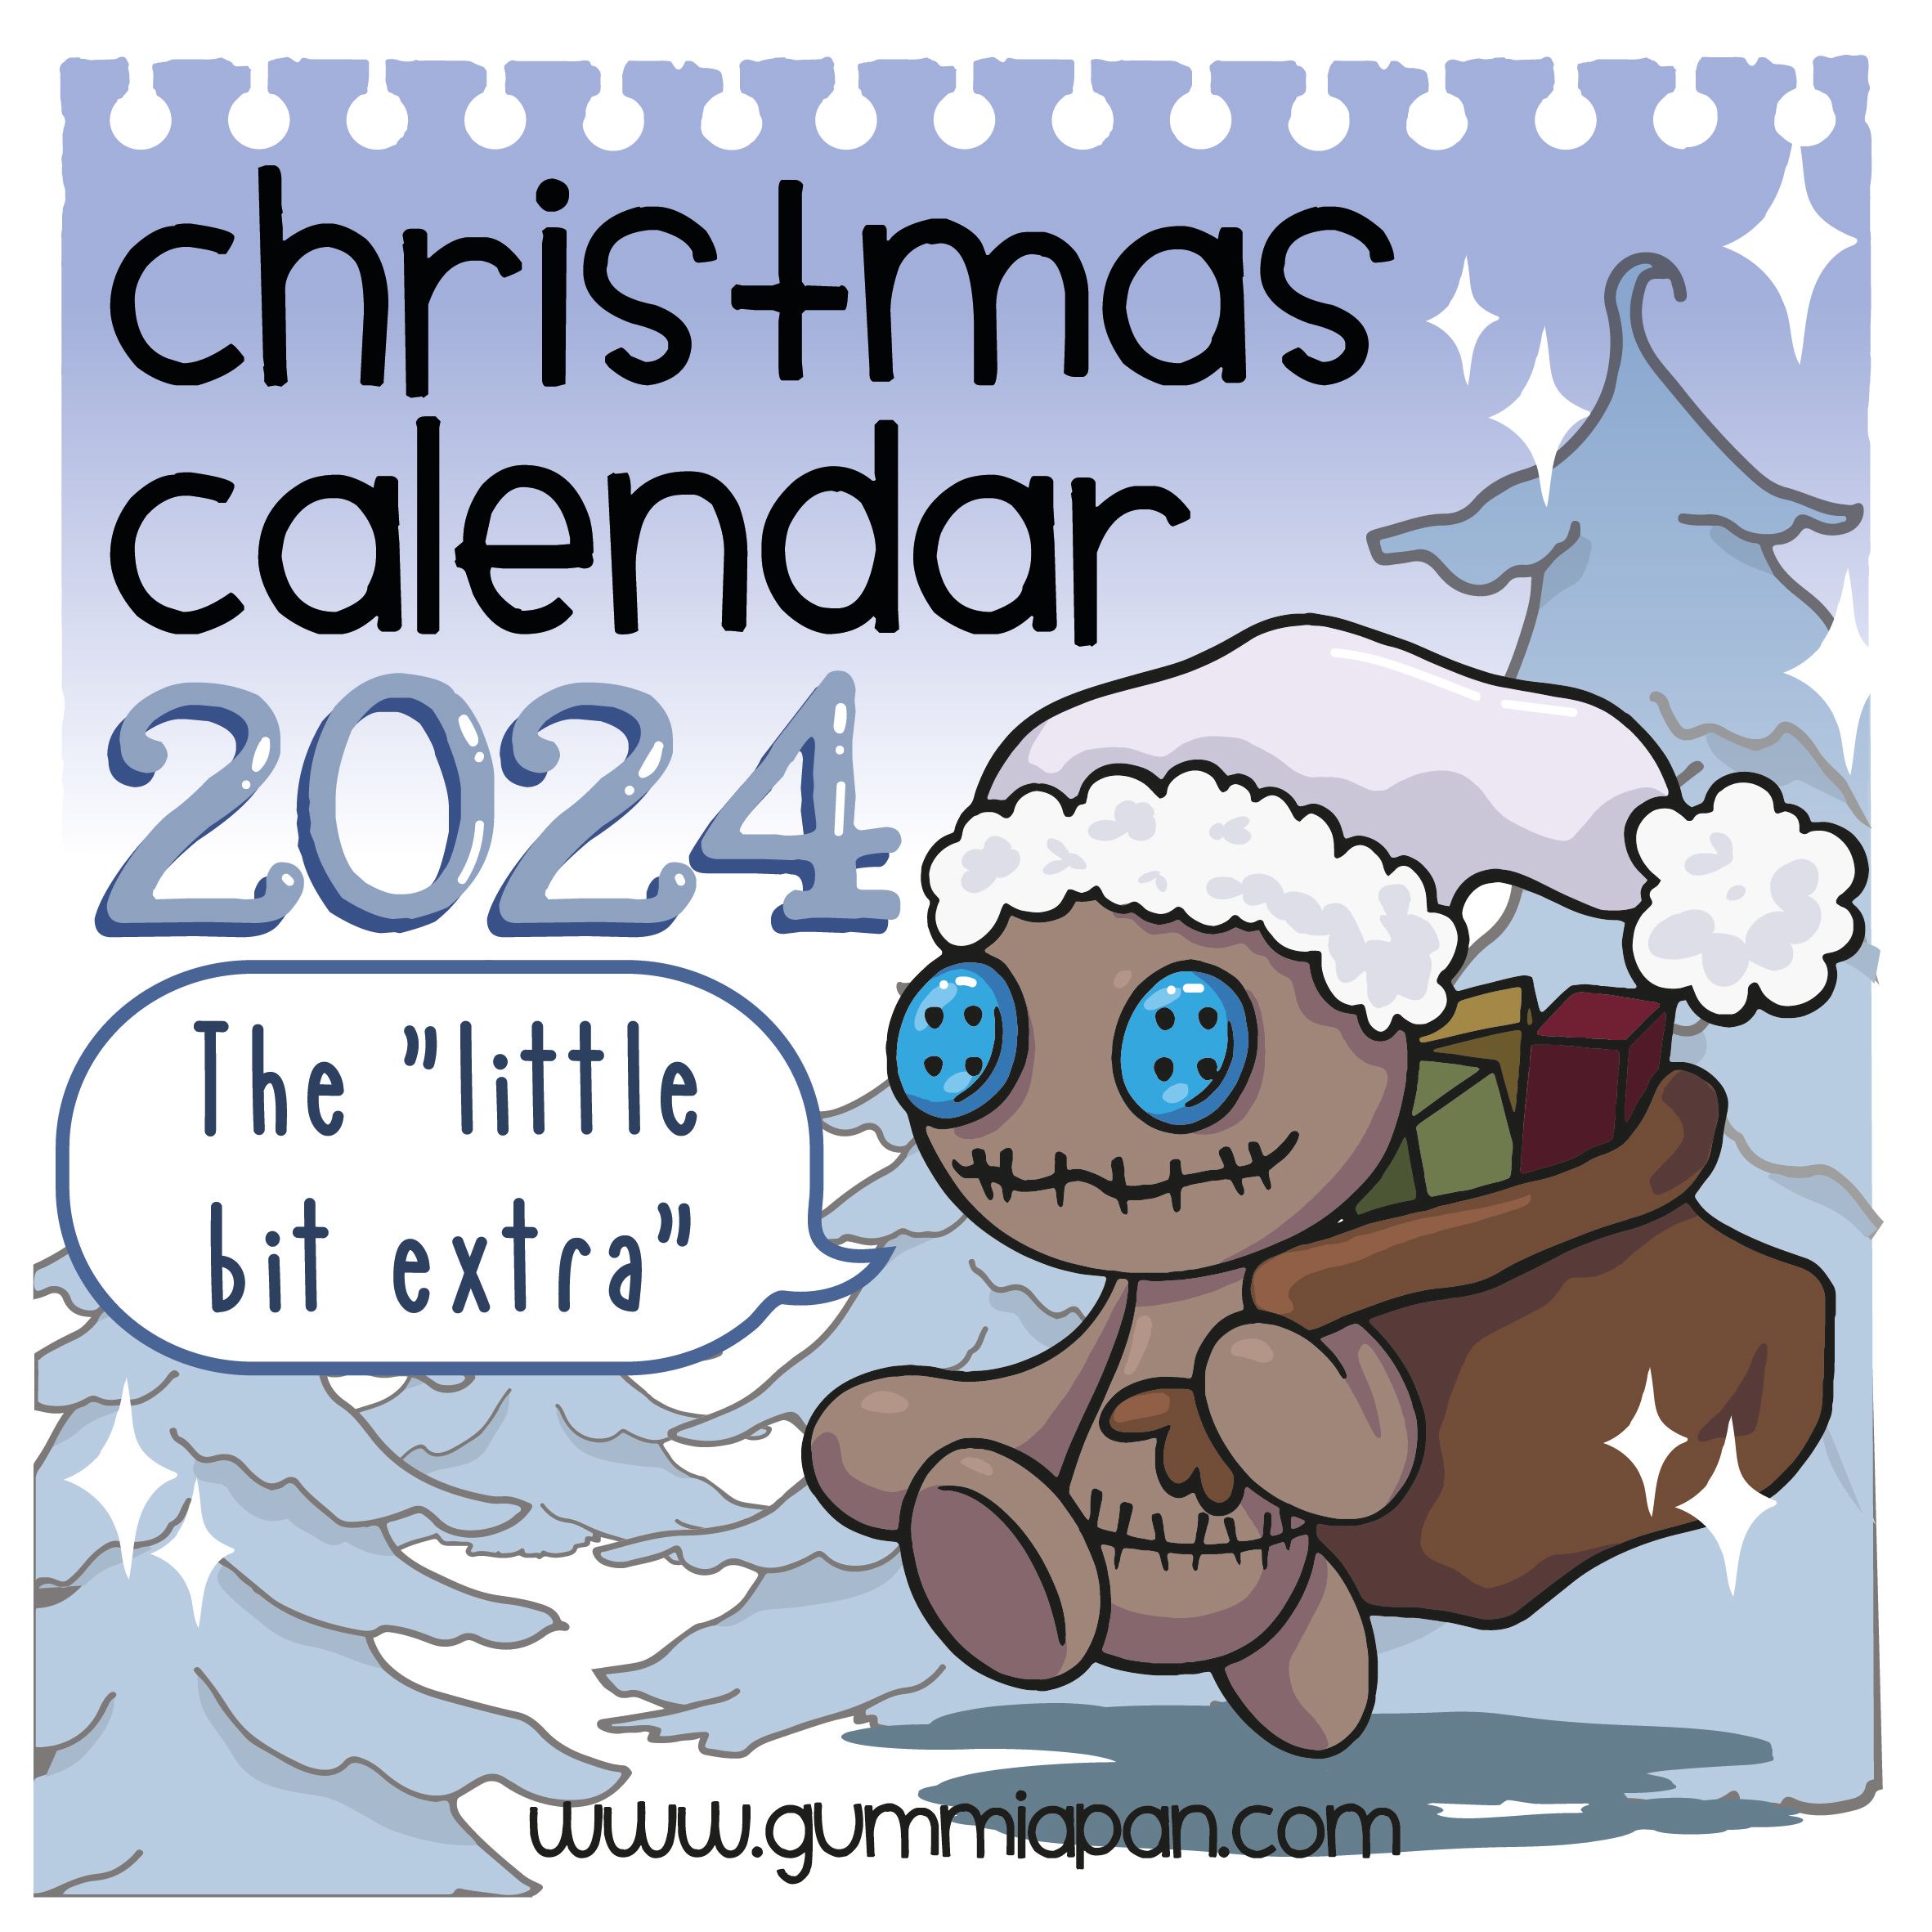 VORBESTELLUNG - Gummiapan: "The little bit extra" Christmas Calendar 2024